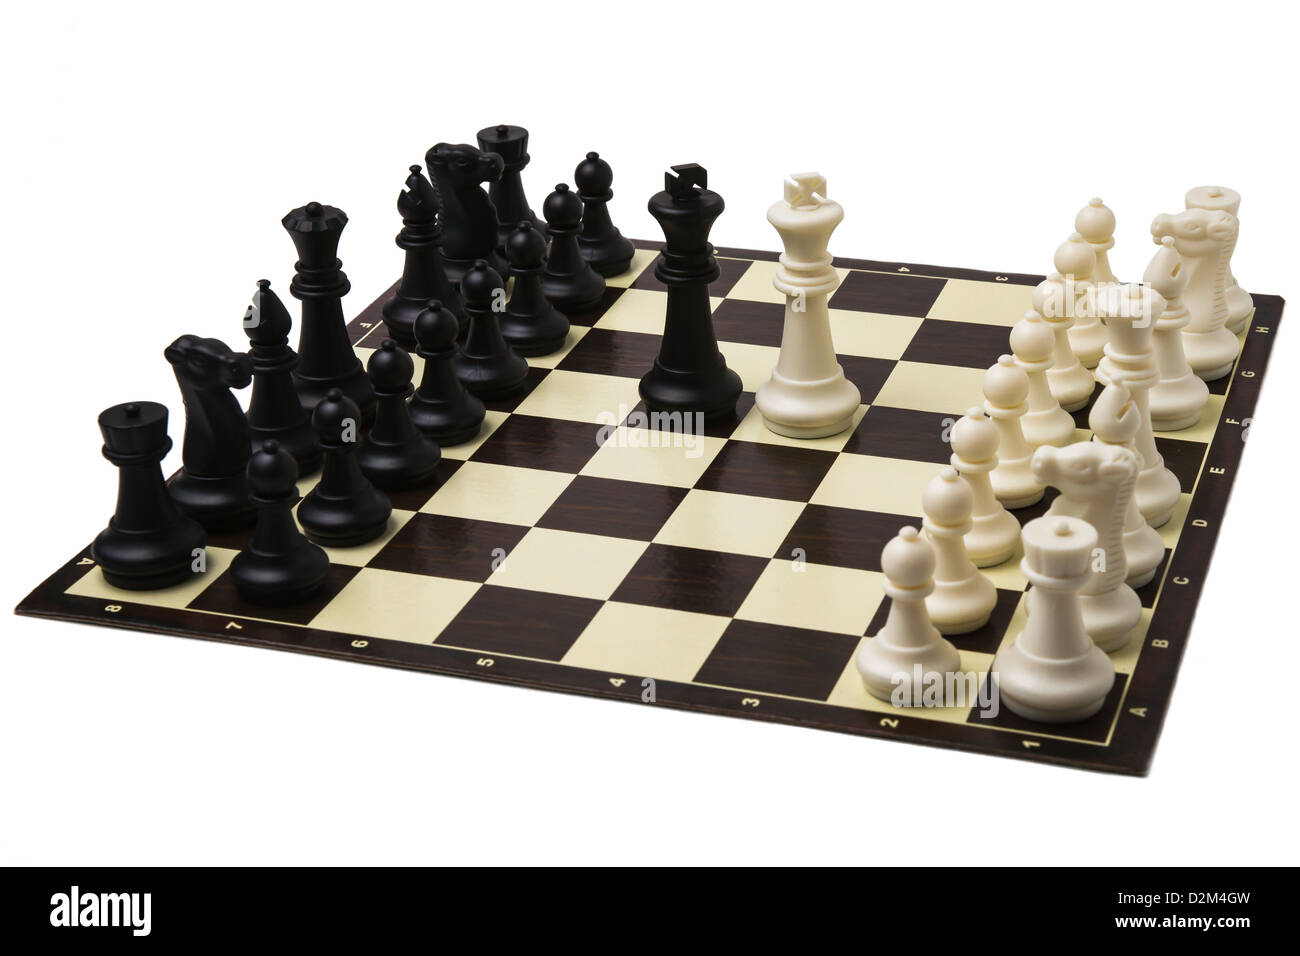 Les négociations de paix au niveau du sommet. Un prêt à jouer jeux d'échecs et de rois en noir et blanc au milieu d'un échiquier. Banque D'Images